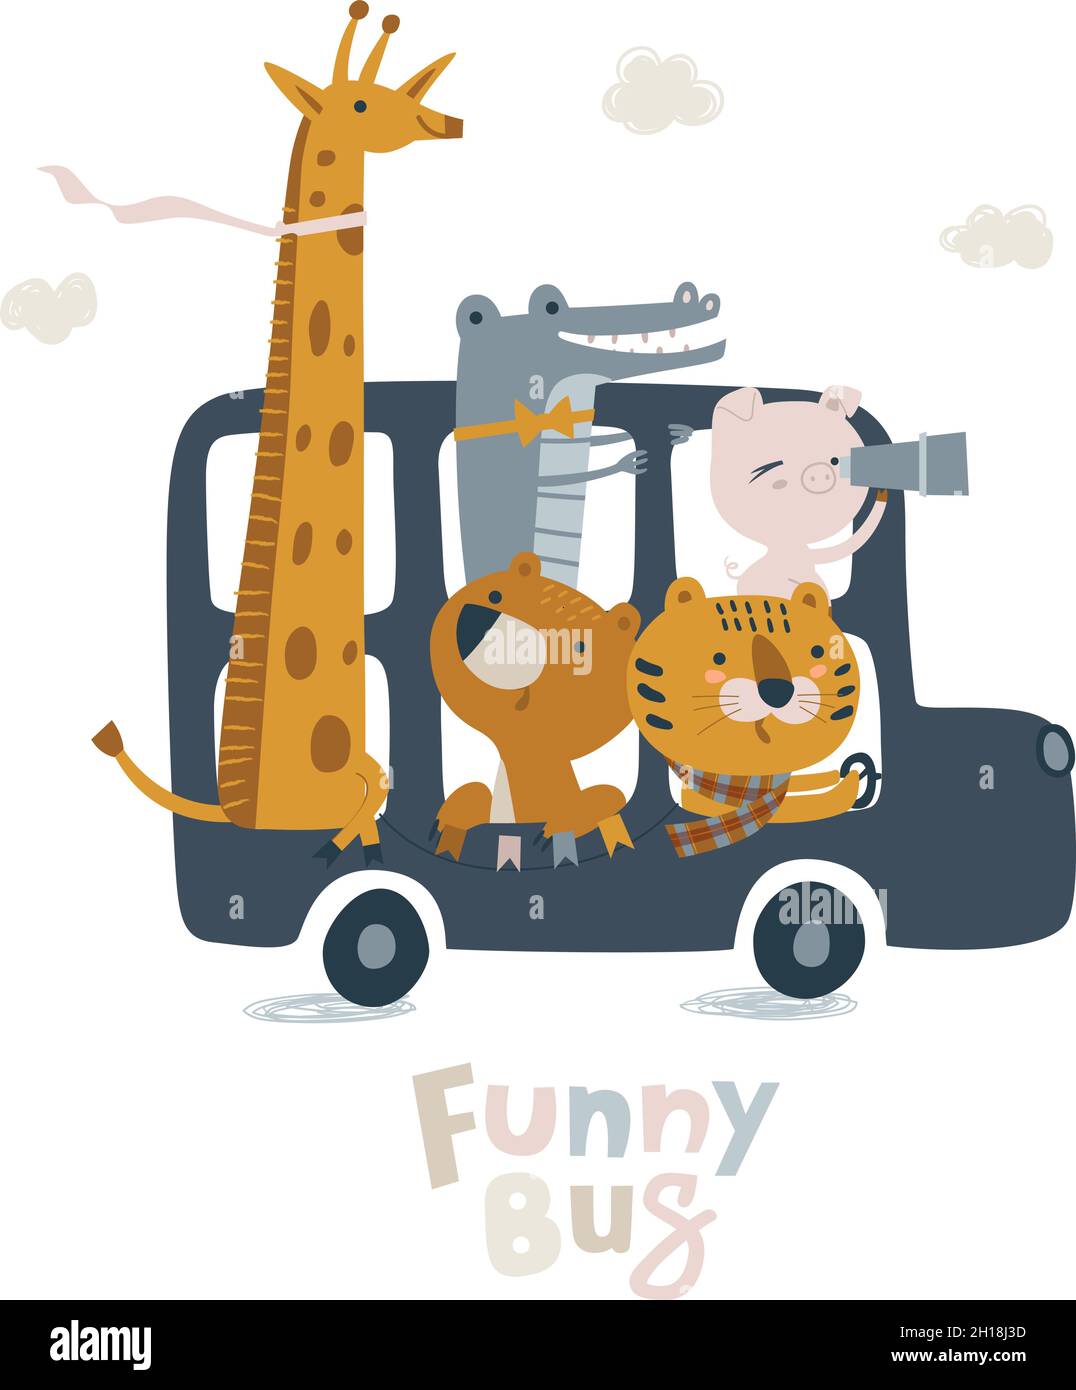 Joli bus londonien avec des animaux dans des tons pastel.Lion cub, crocodile, girafe, ours illustration pour nouveau-né.Illustration avec douche de bébé mignonne Illustration de Vecteur